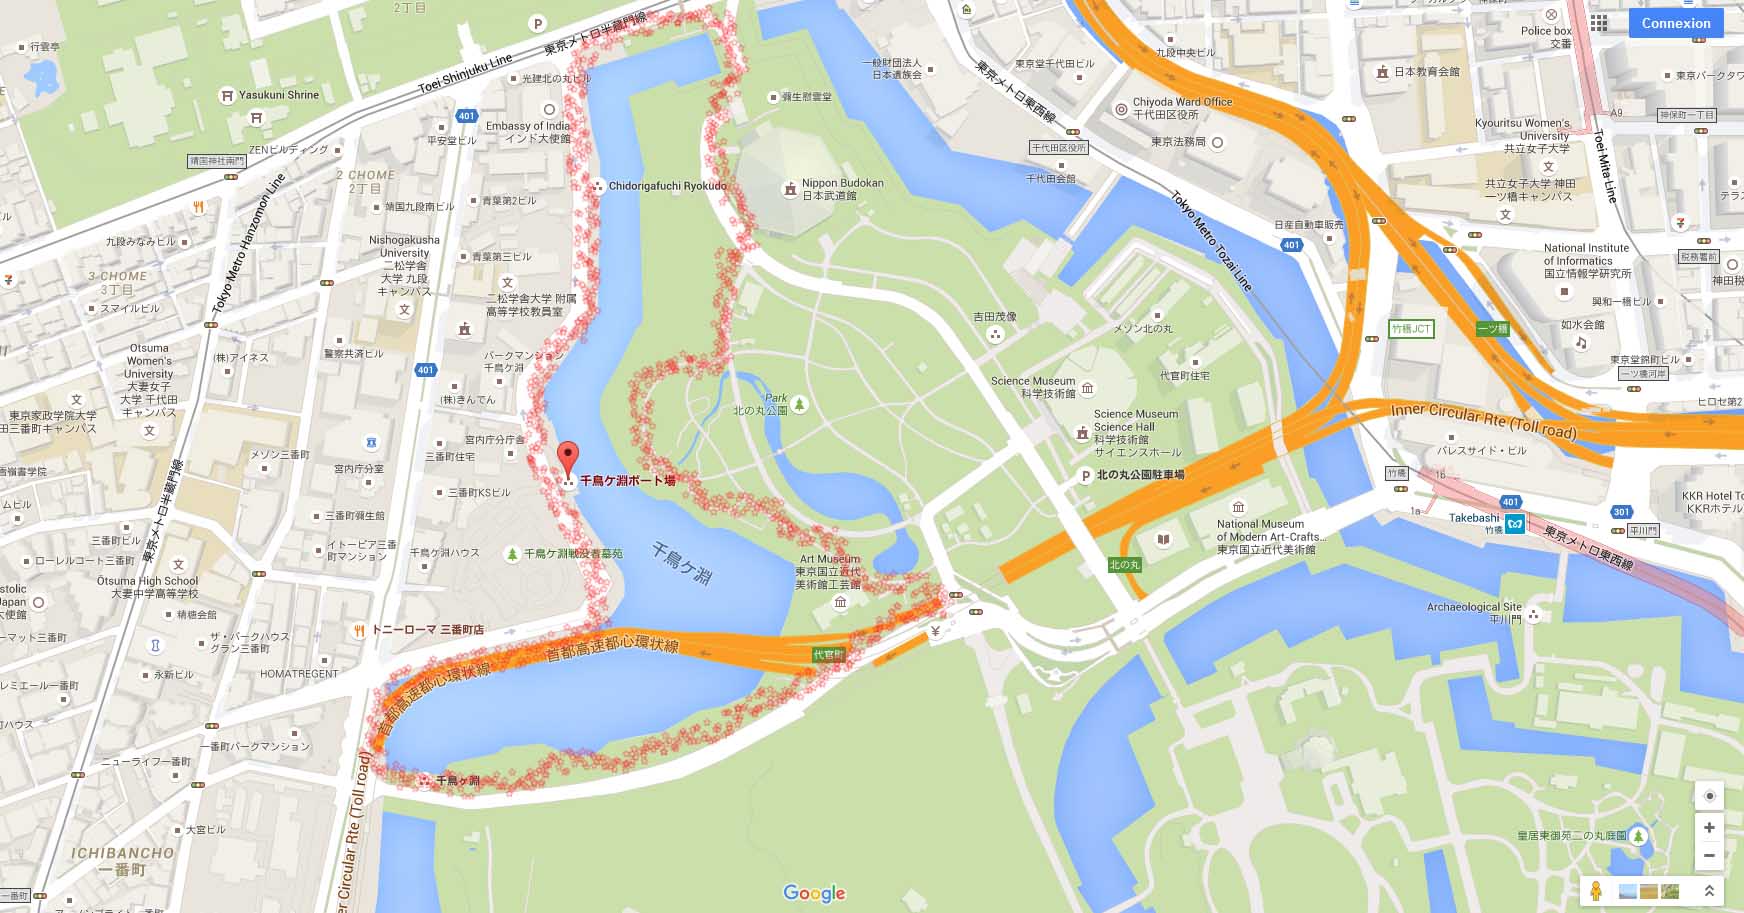 Notre chemin le long des cerisiers à Tokyo © Aventure Japon et Google